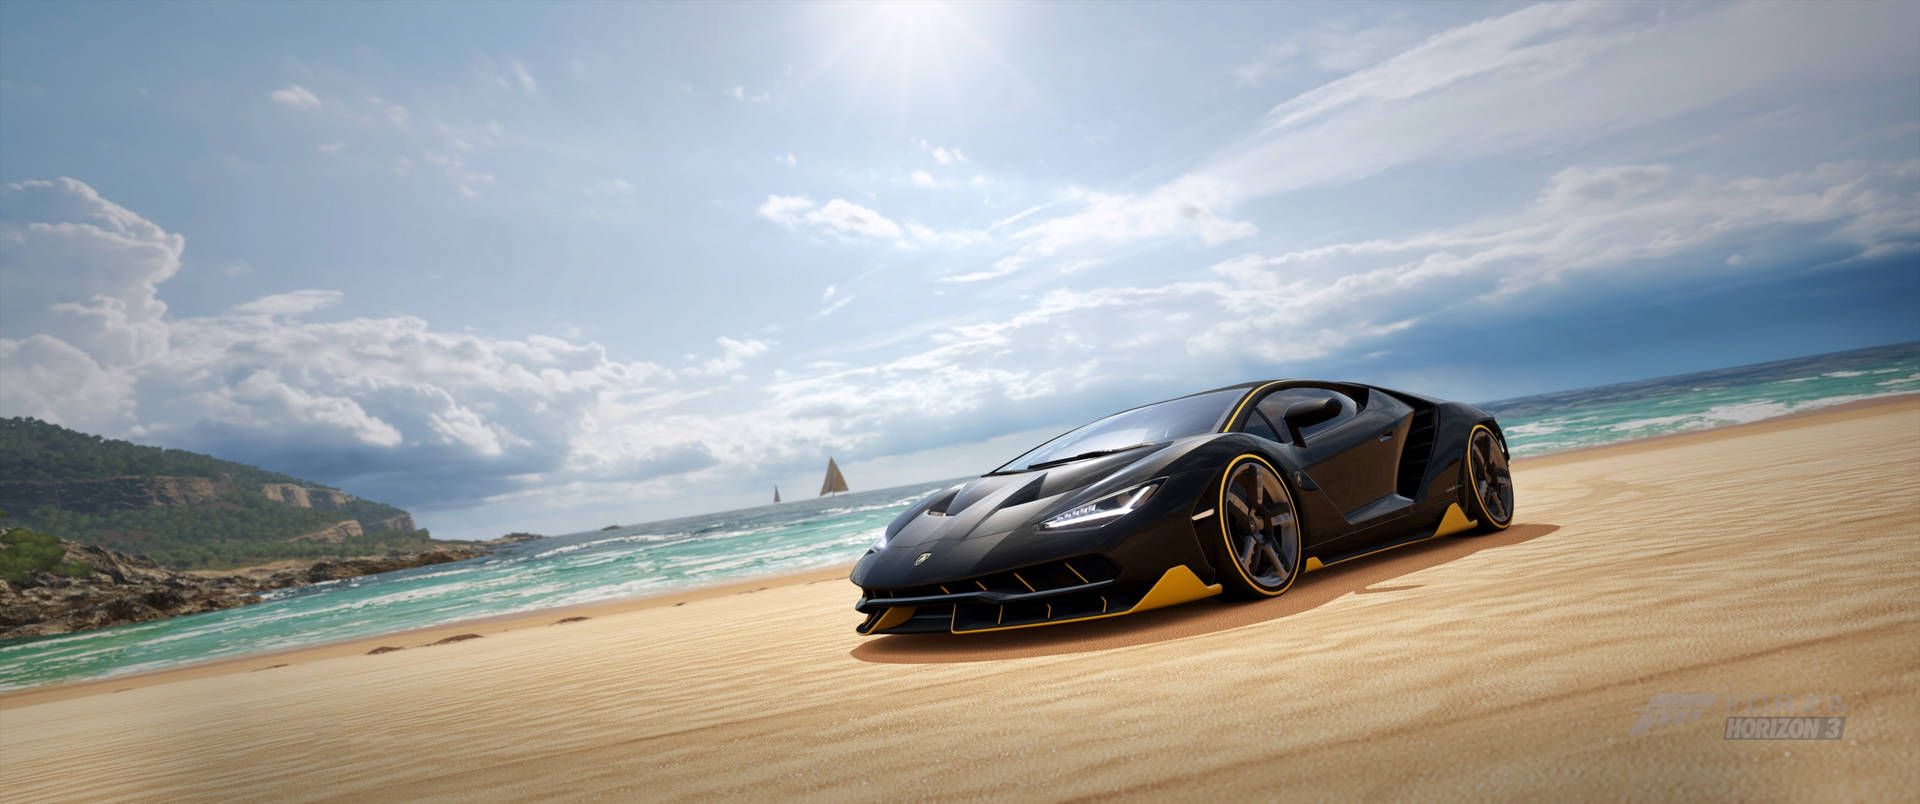 Black Lamborghini In Forza Horizon 3 Picture